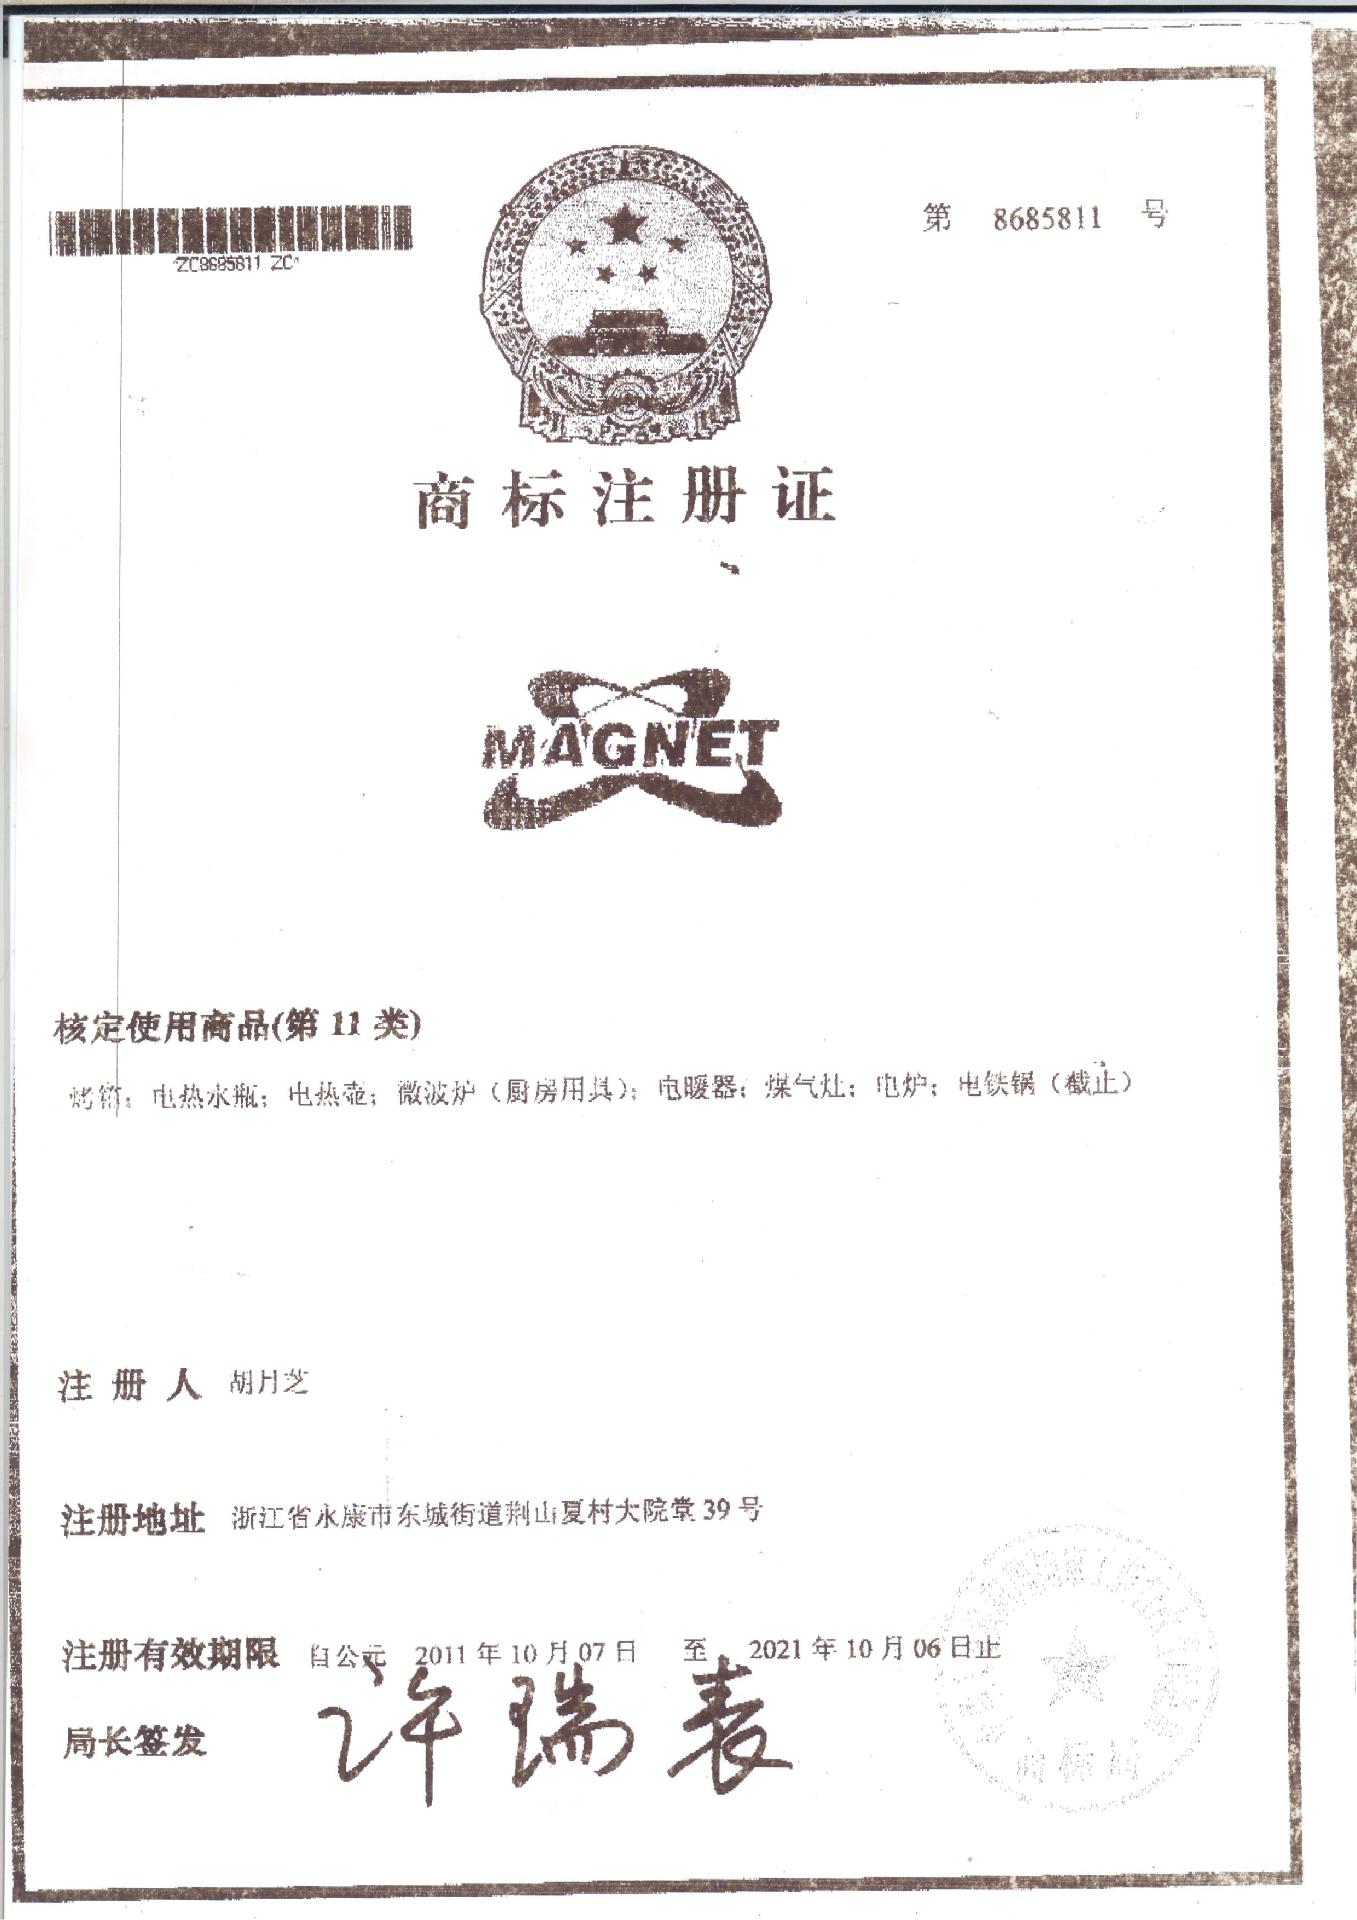 MAGNET商标证